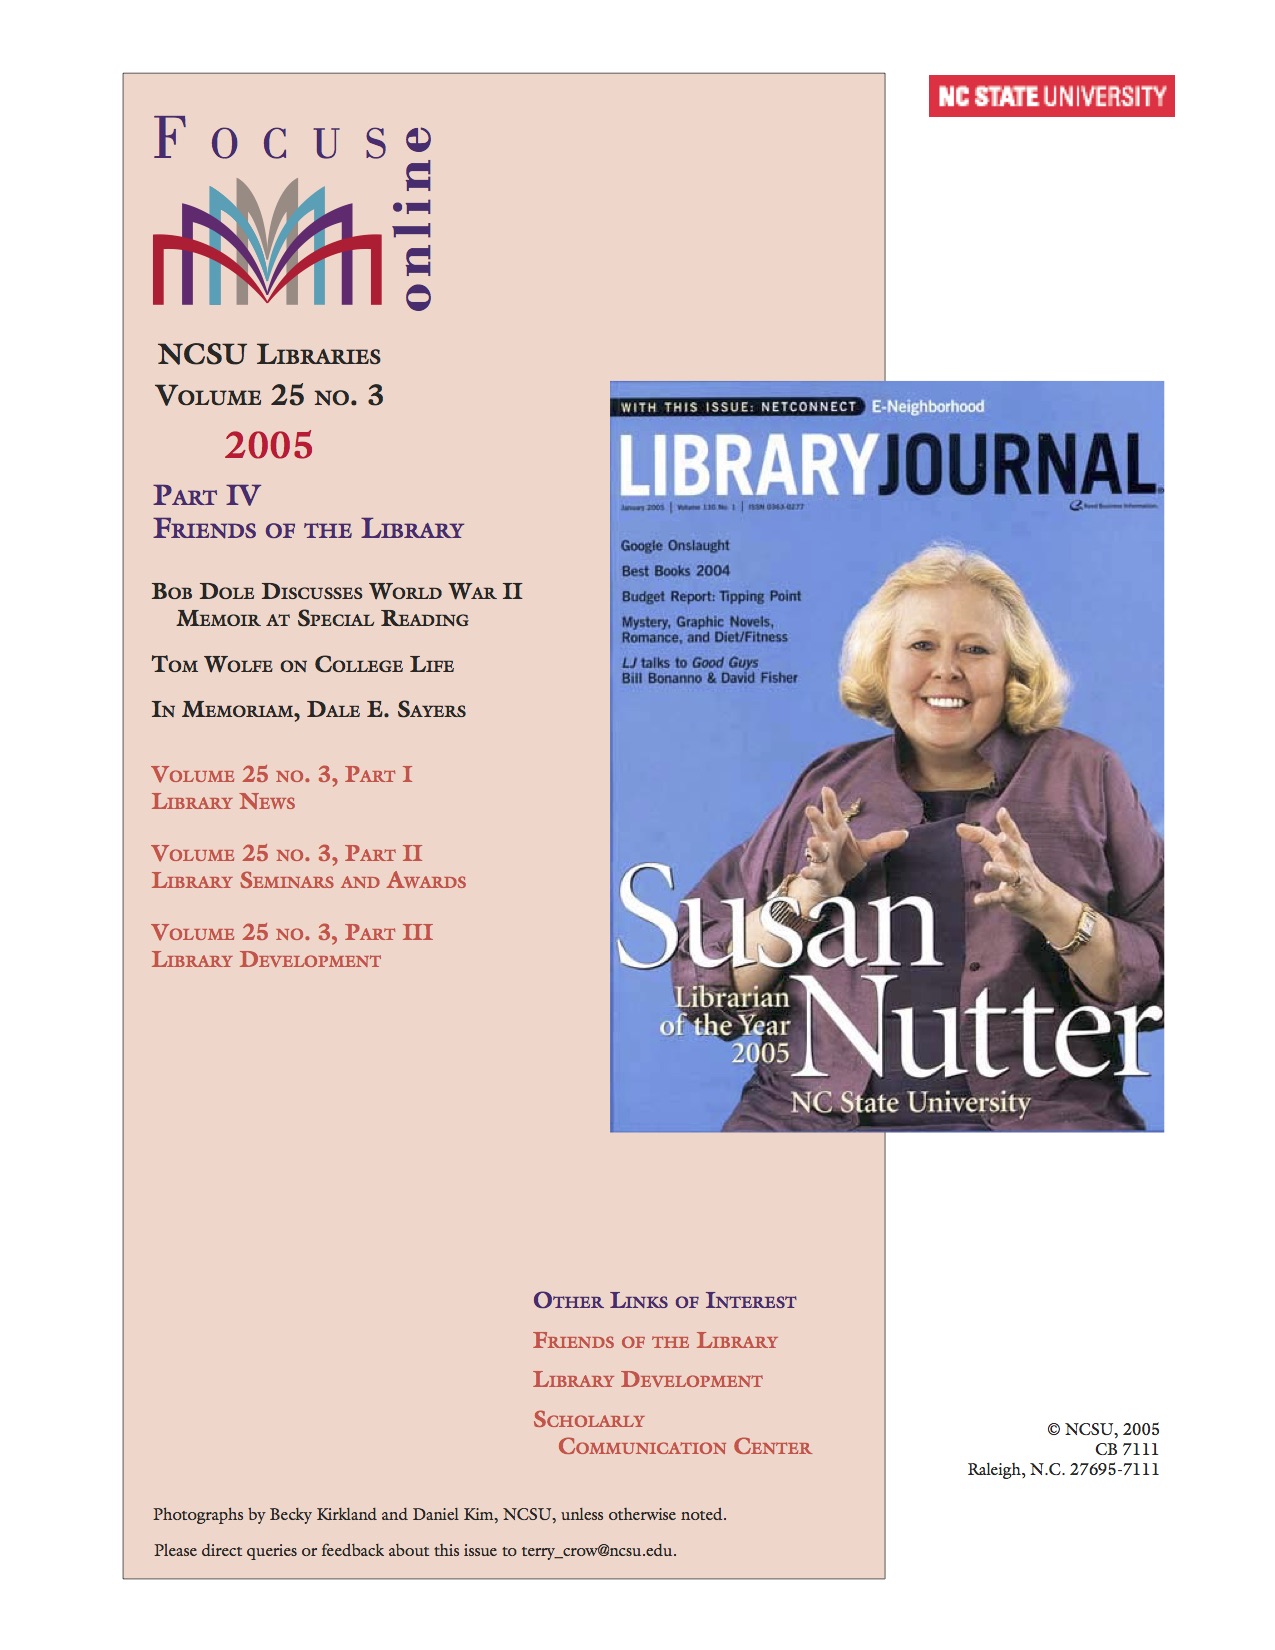 librarian Susan Nutter IV